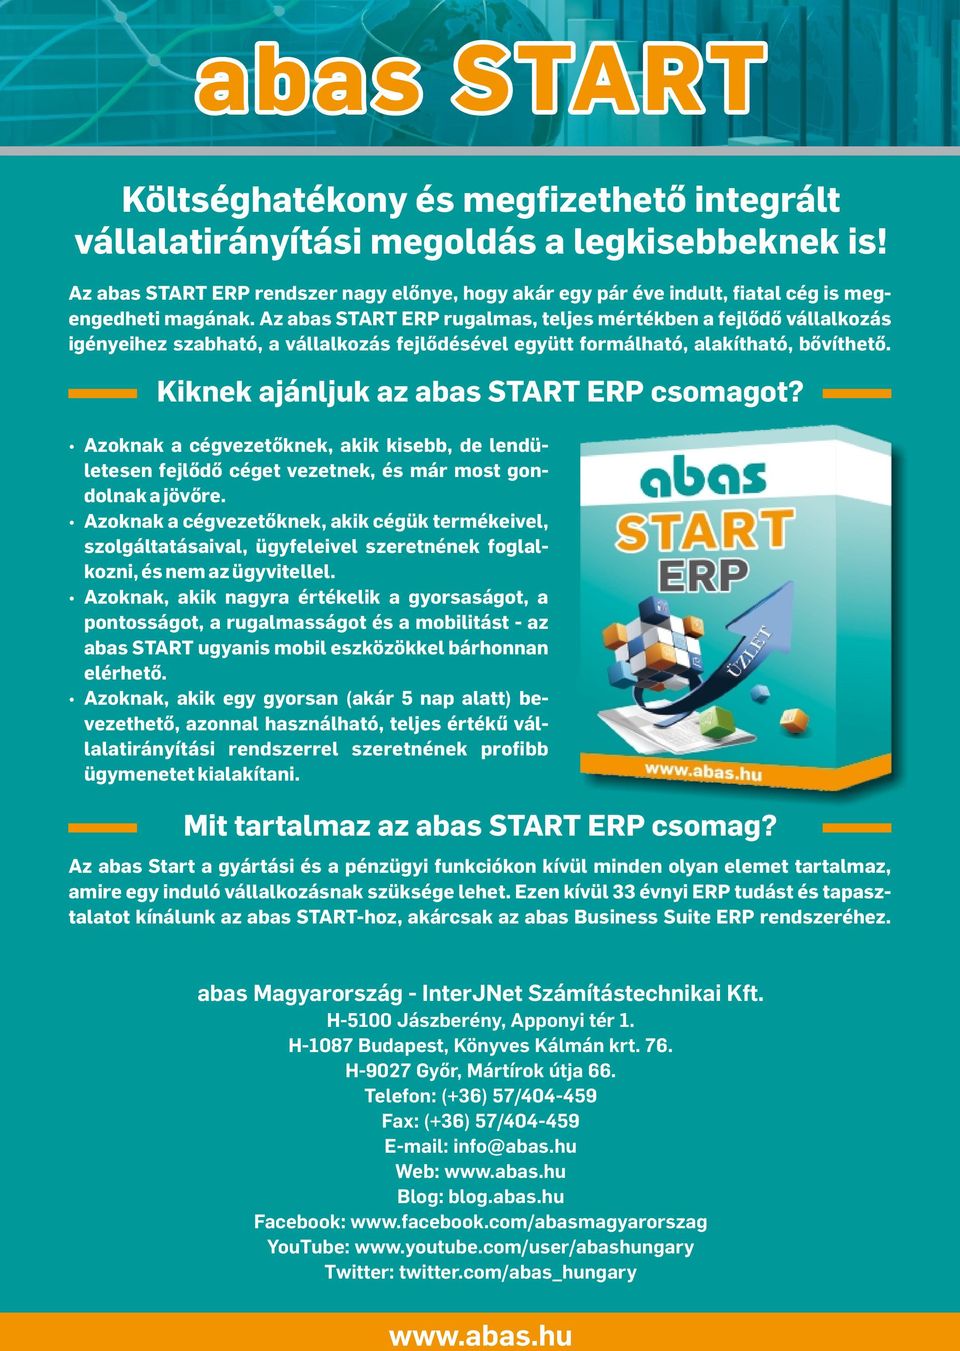 Az abas START ERP rugalmas, teljes mértékben a fejlődő vállalkozás igényeihez szabható, a vállalkozás fejlődésével együtt formálható, alakítható, bővíthető. Kiknek ajánljuk az abas START ERP csomagot?